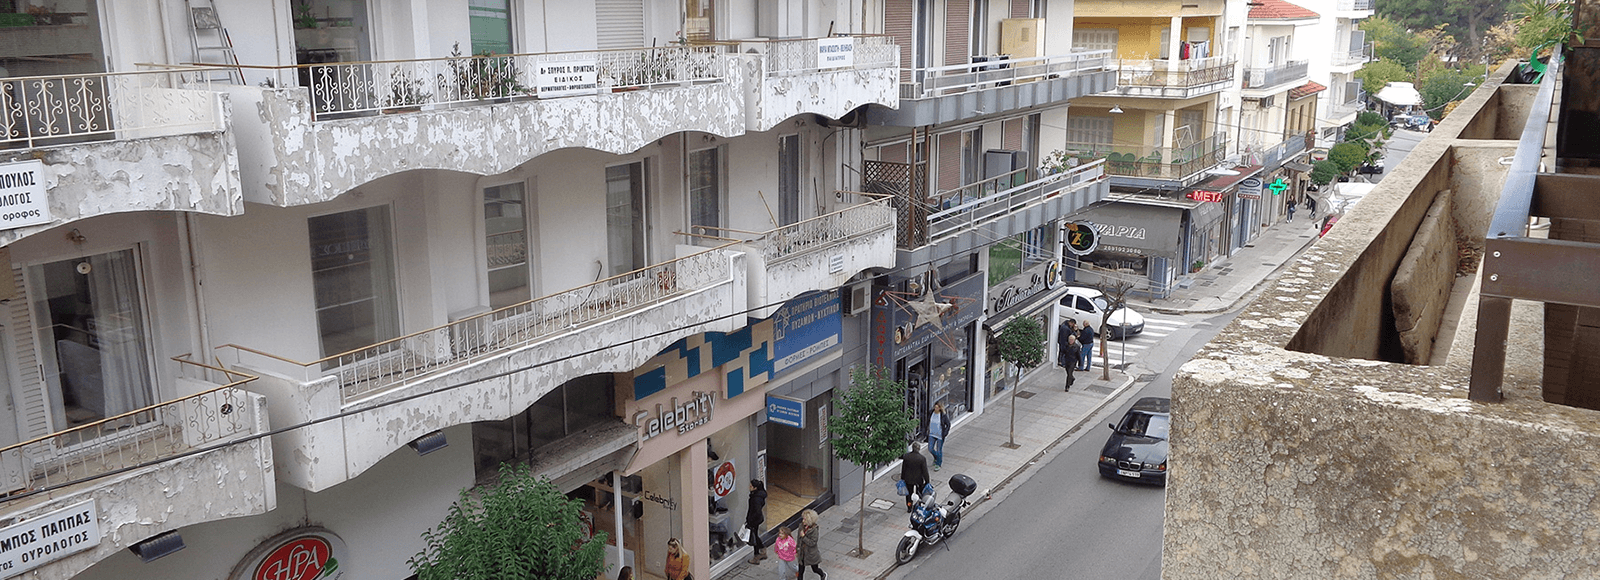 Πωλείται πολυκατοικία 3 ορόφων με καταστήματα στην 28η Οκτωβρίου στο κέντρο των Ιωαννίνων